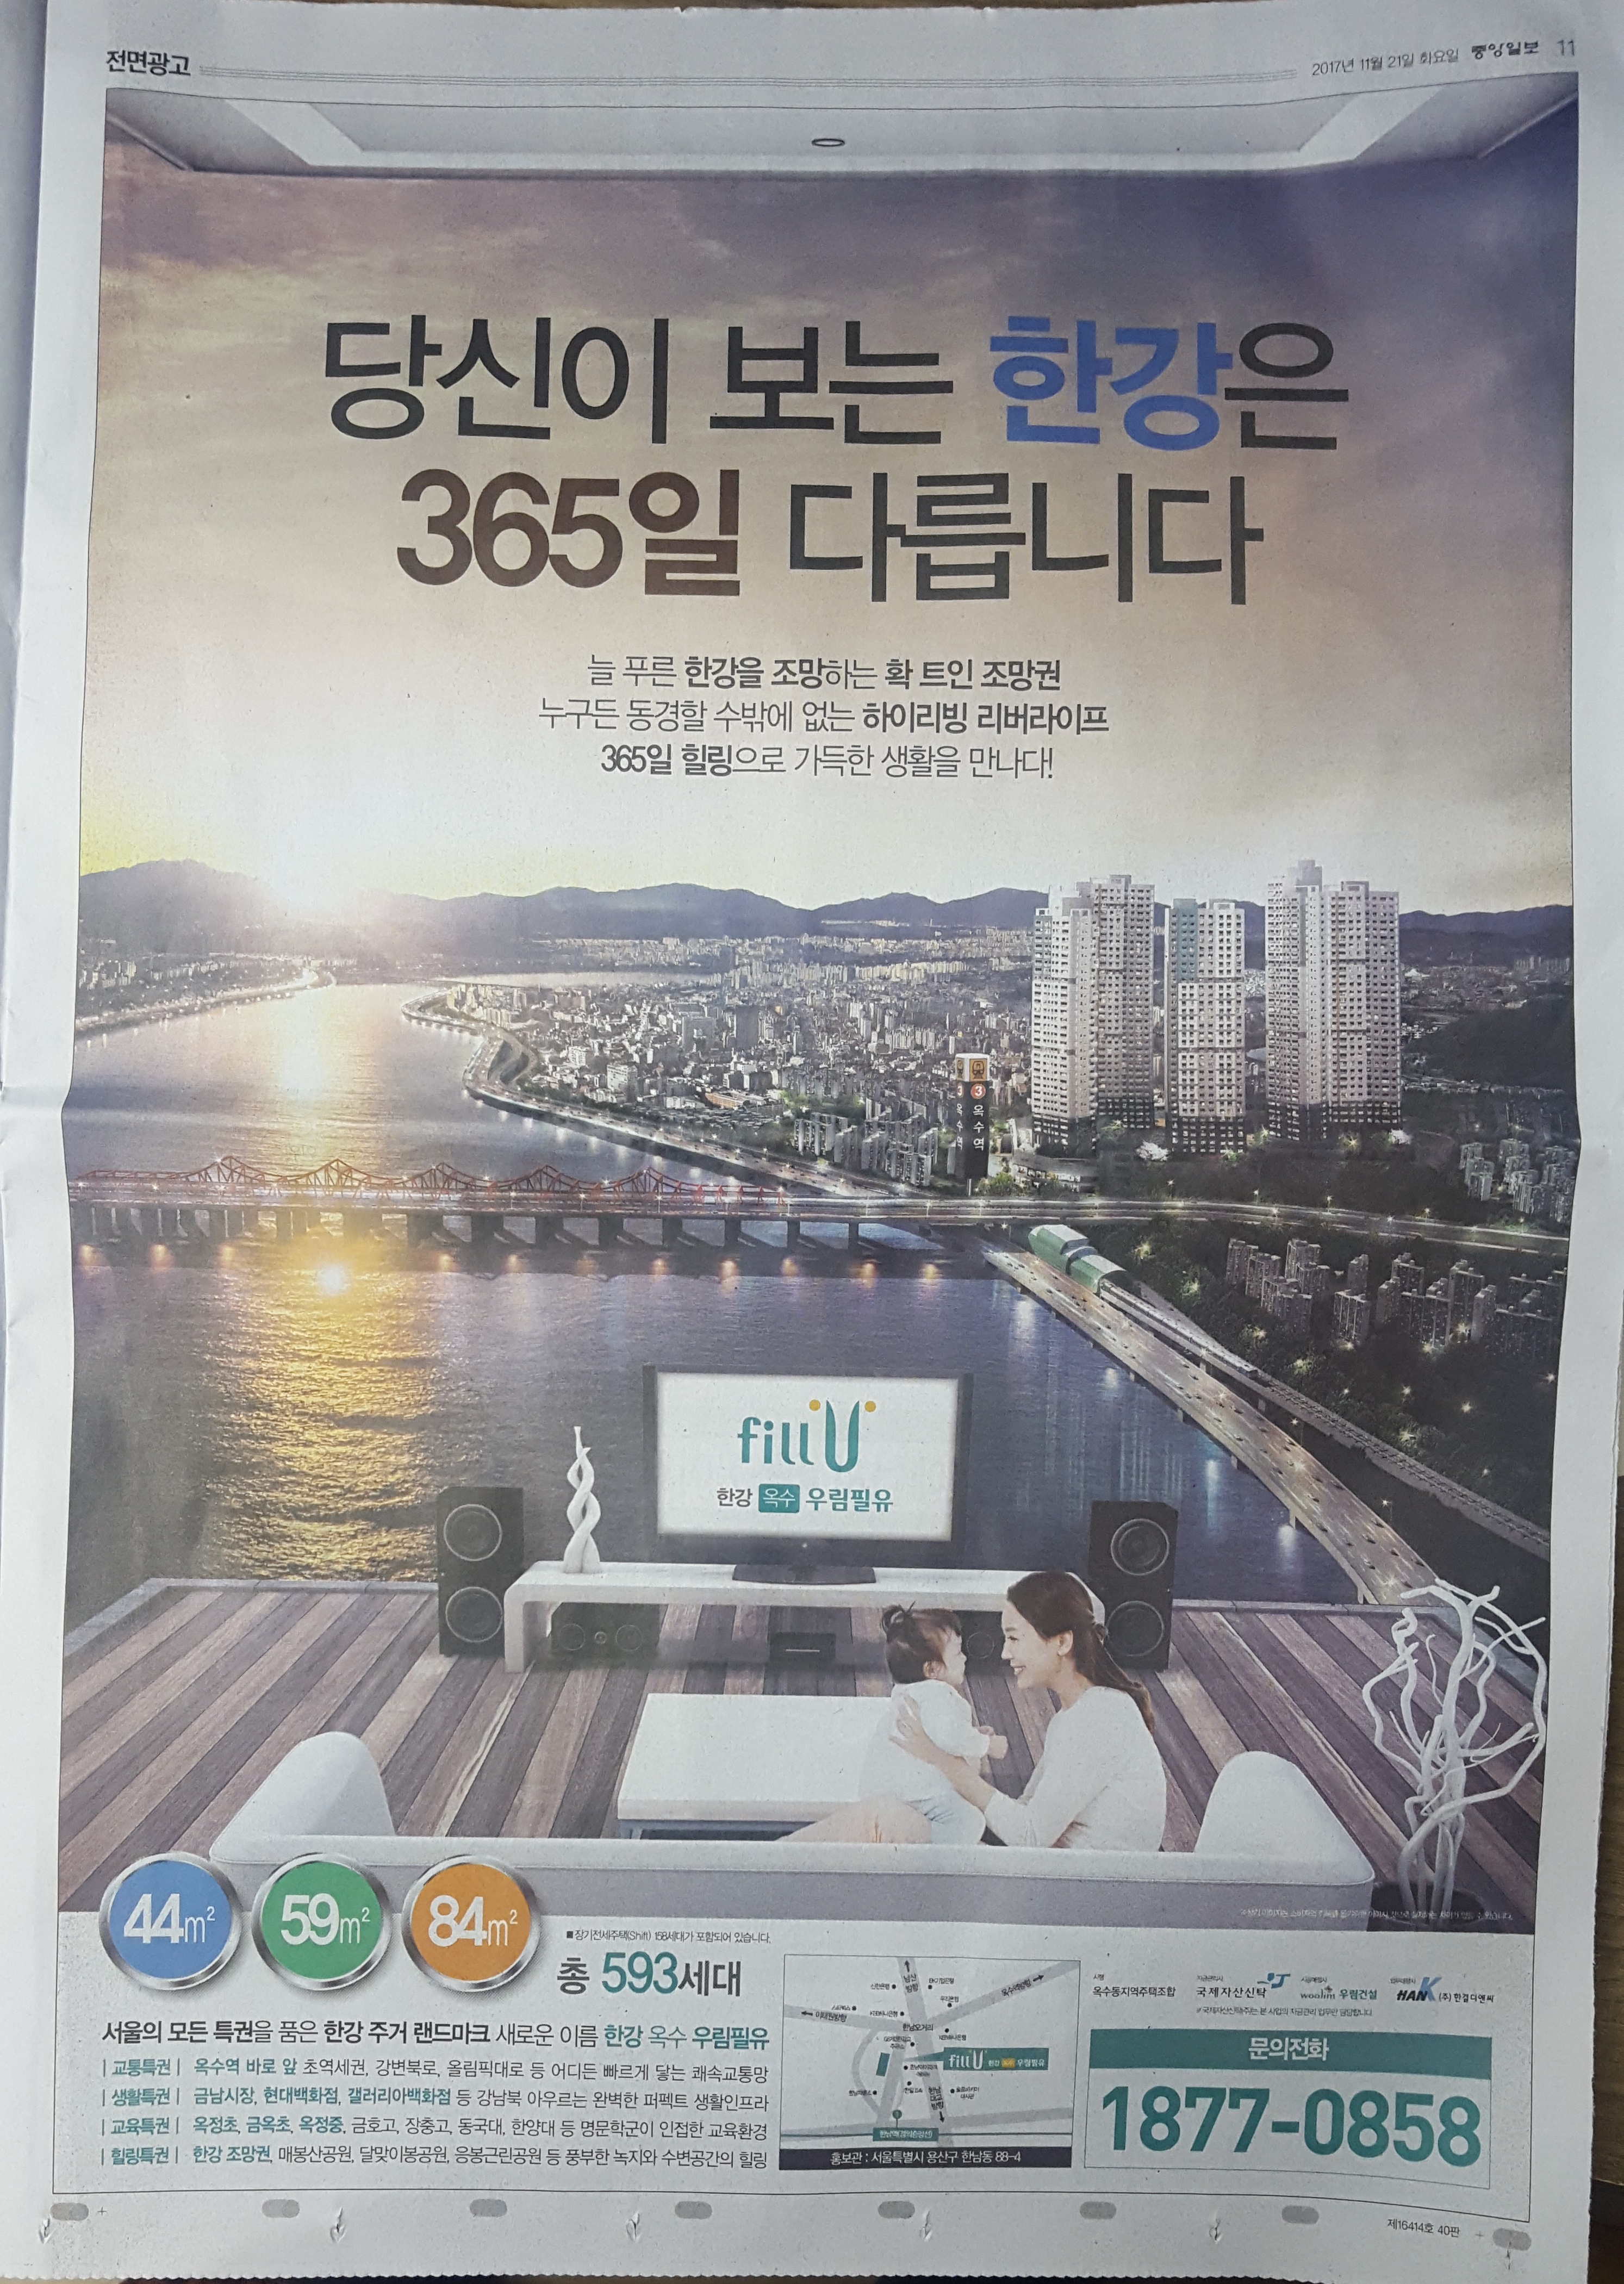 11월 21일 중앙일보 11 한강 옥수 우림필유-전면.jpg